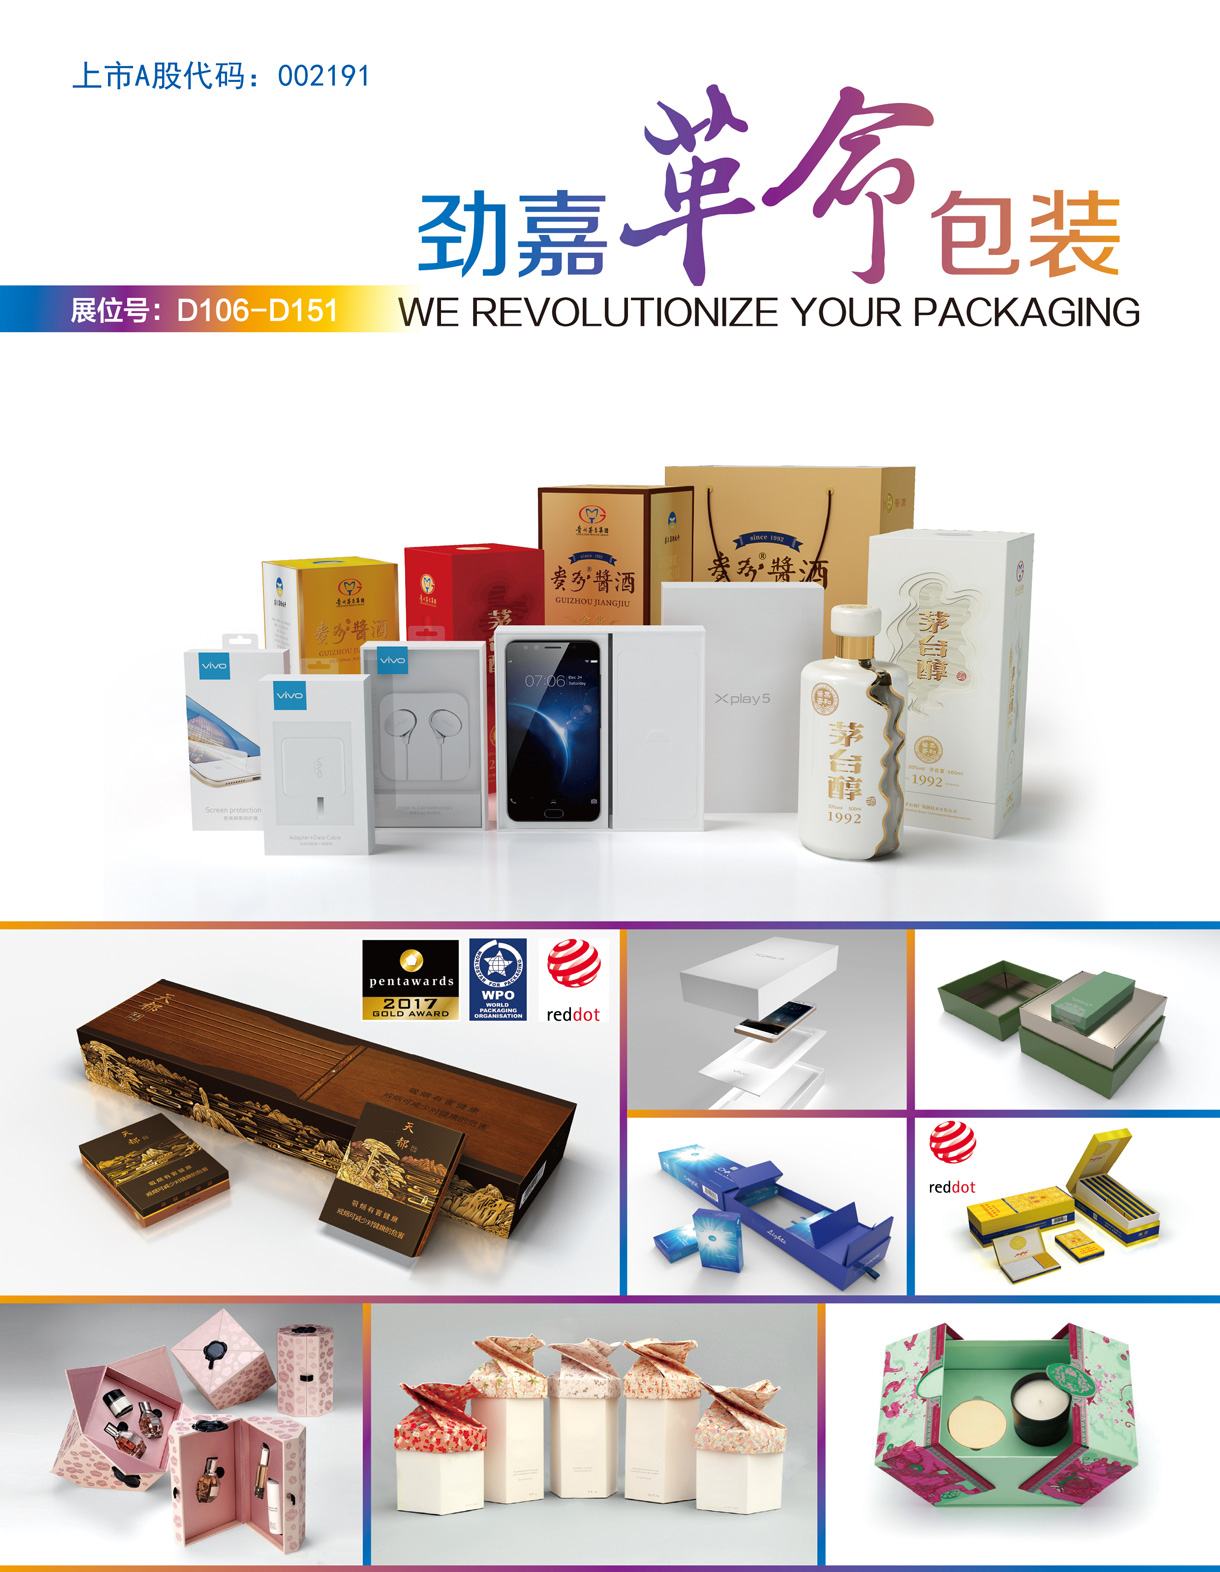 深圳劲嘉新型智能包装有限公司-包装工业展-包装工业展览会